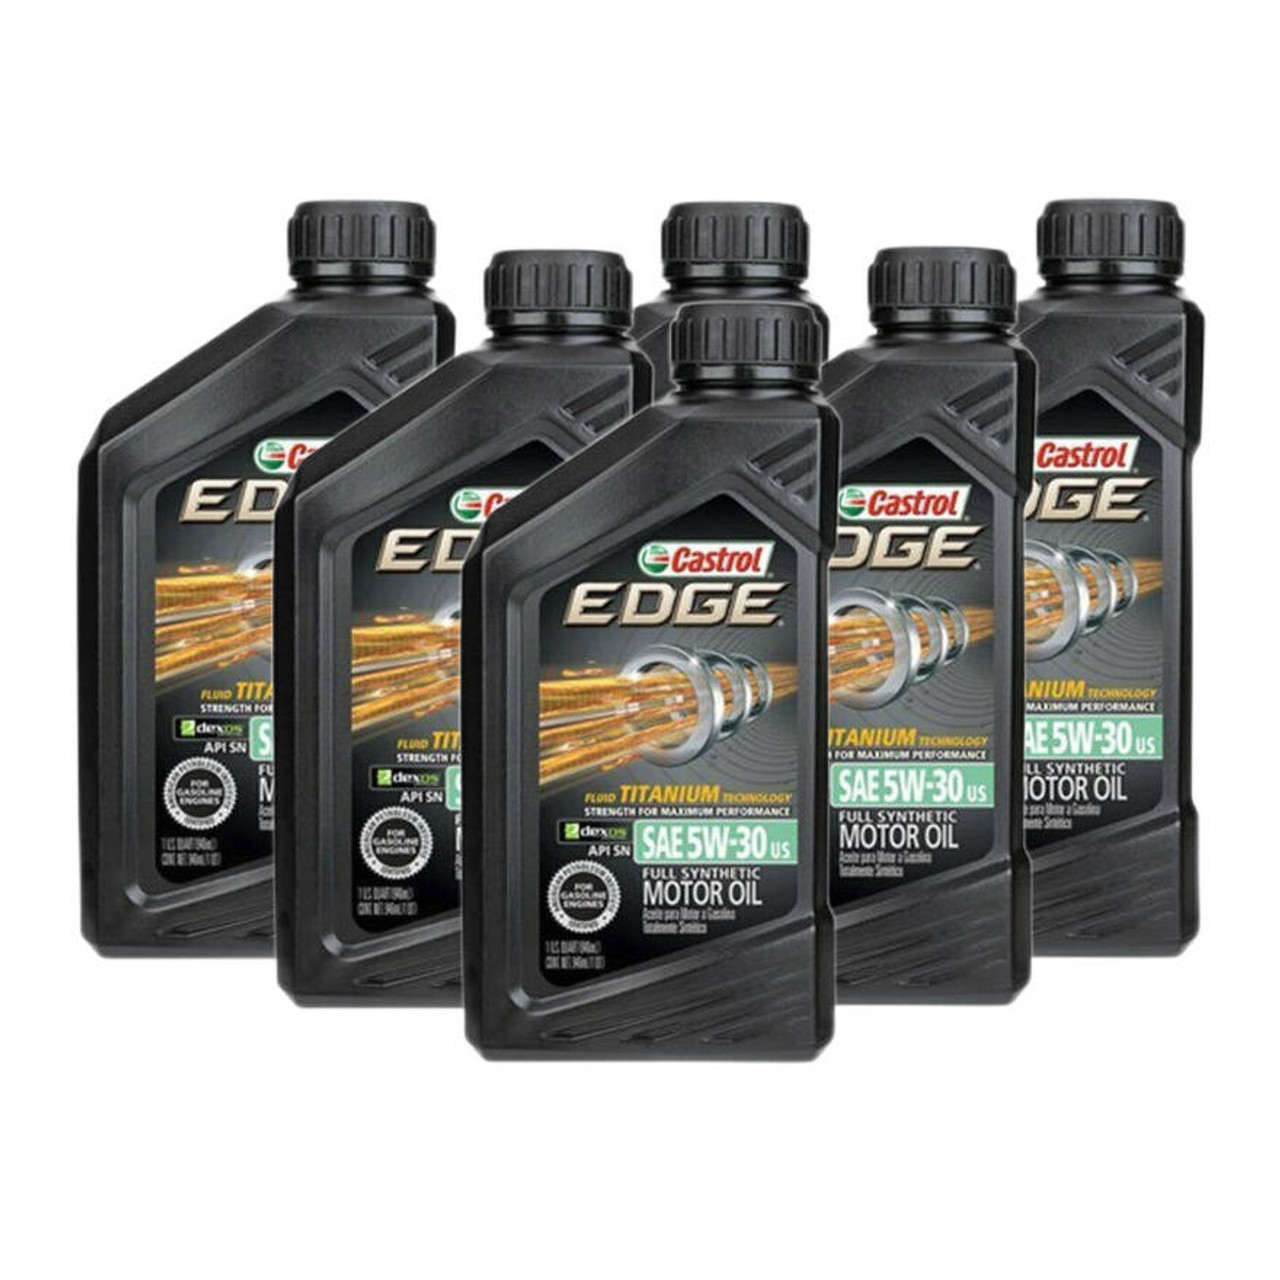 Buy Castrol EDGE Full Synthetic 5w-30 Motor Oil Here